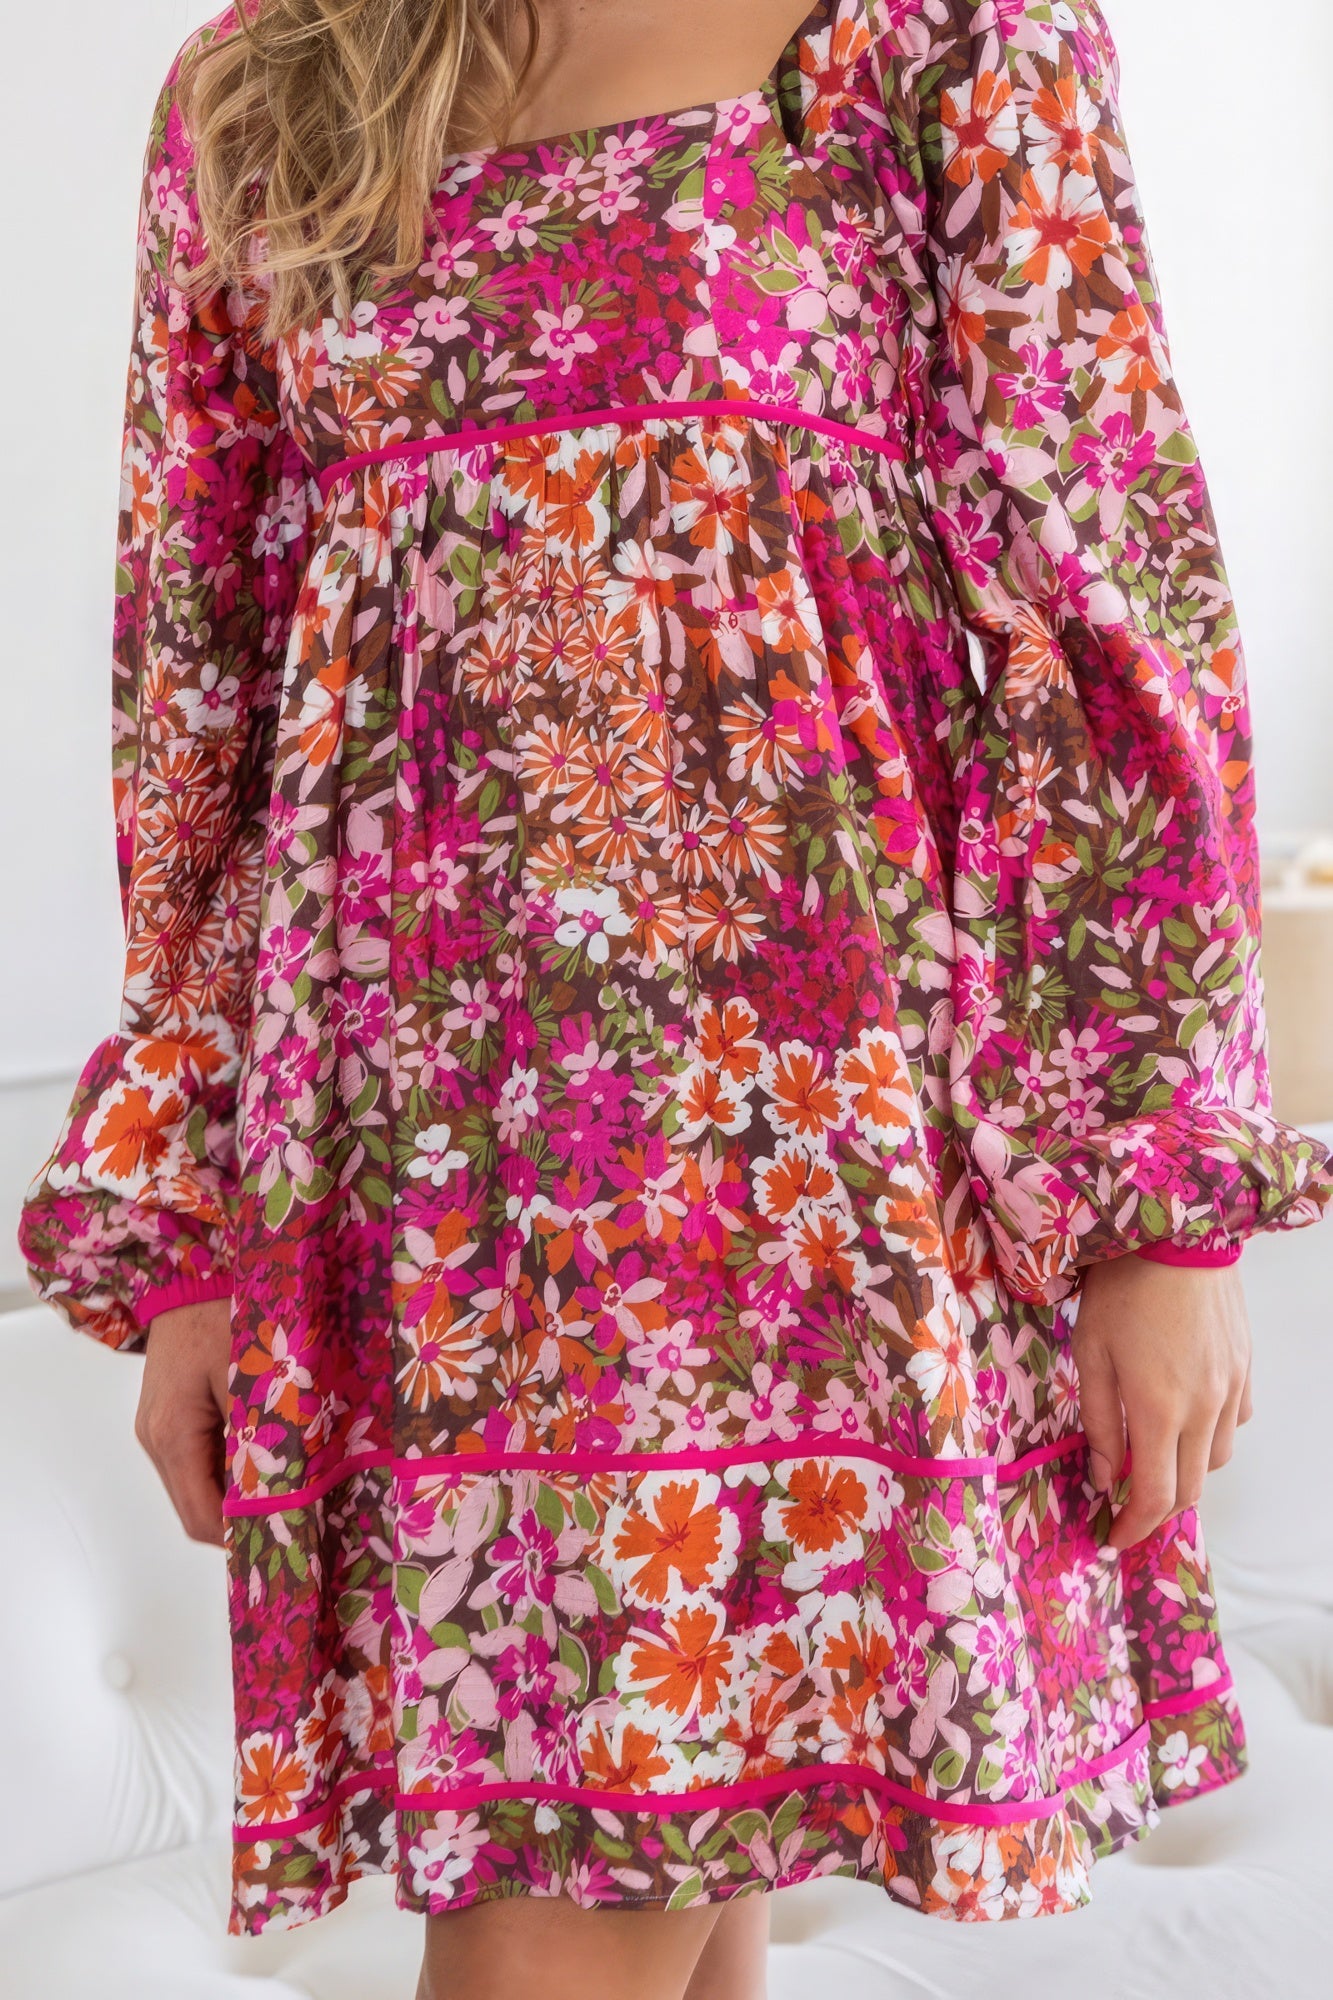 Floral Square Neckline Mini Dress Sunny EvE Fashion